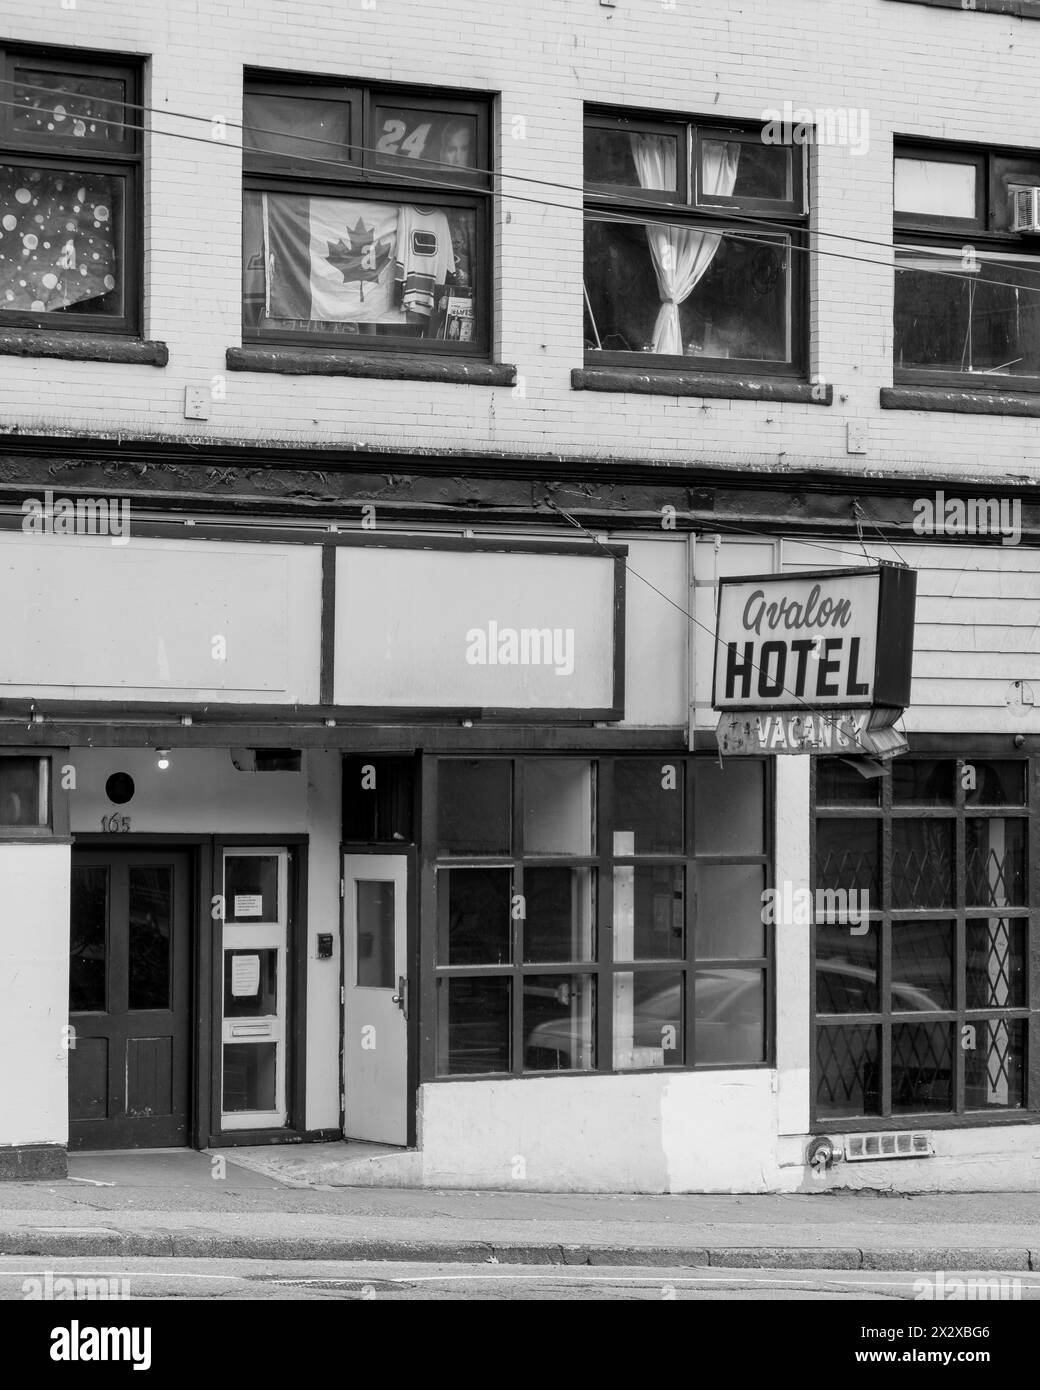 Une photo en noir et blanc d'un vieil hôtel sur la rue Pender avec son panneau de vacance battu et son mur patché, et des rideaux, drapeaux, affiches sur les fenêtres. Banque D'Images